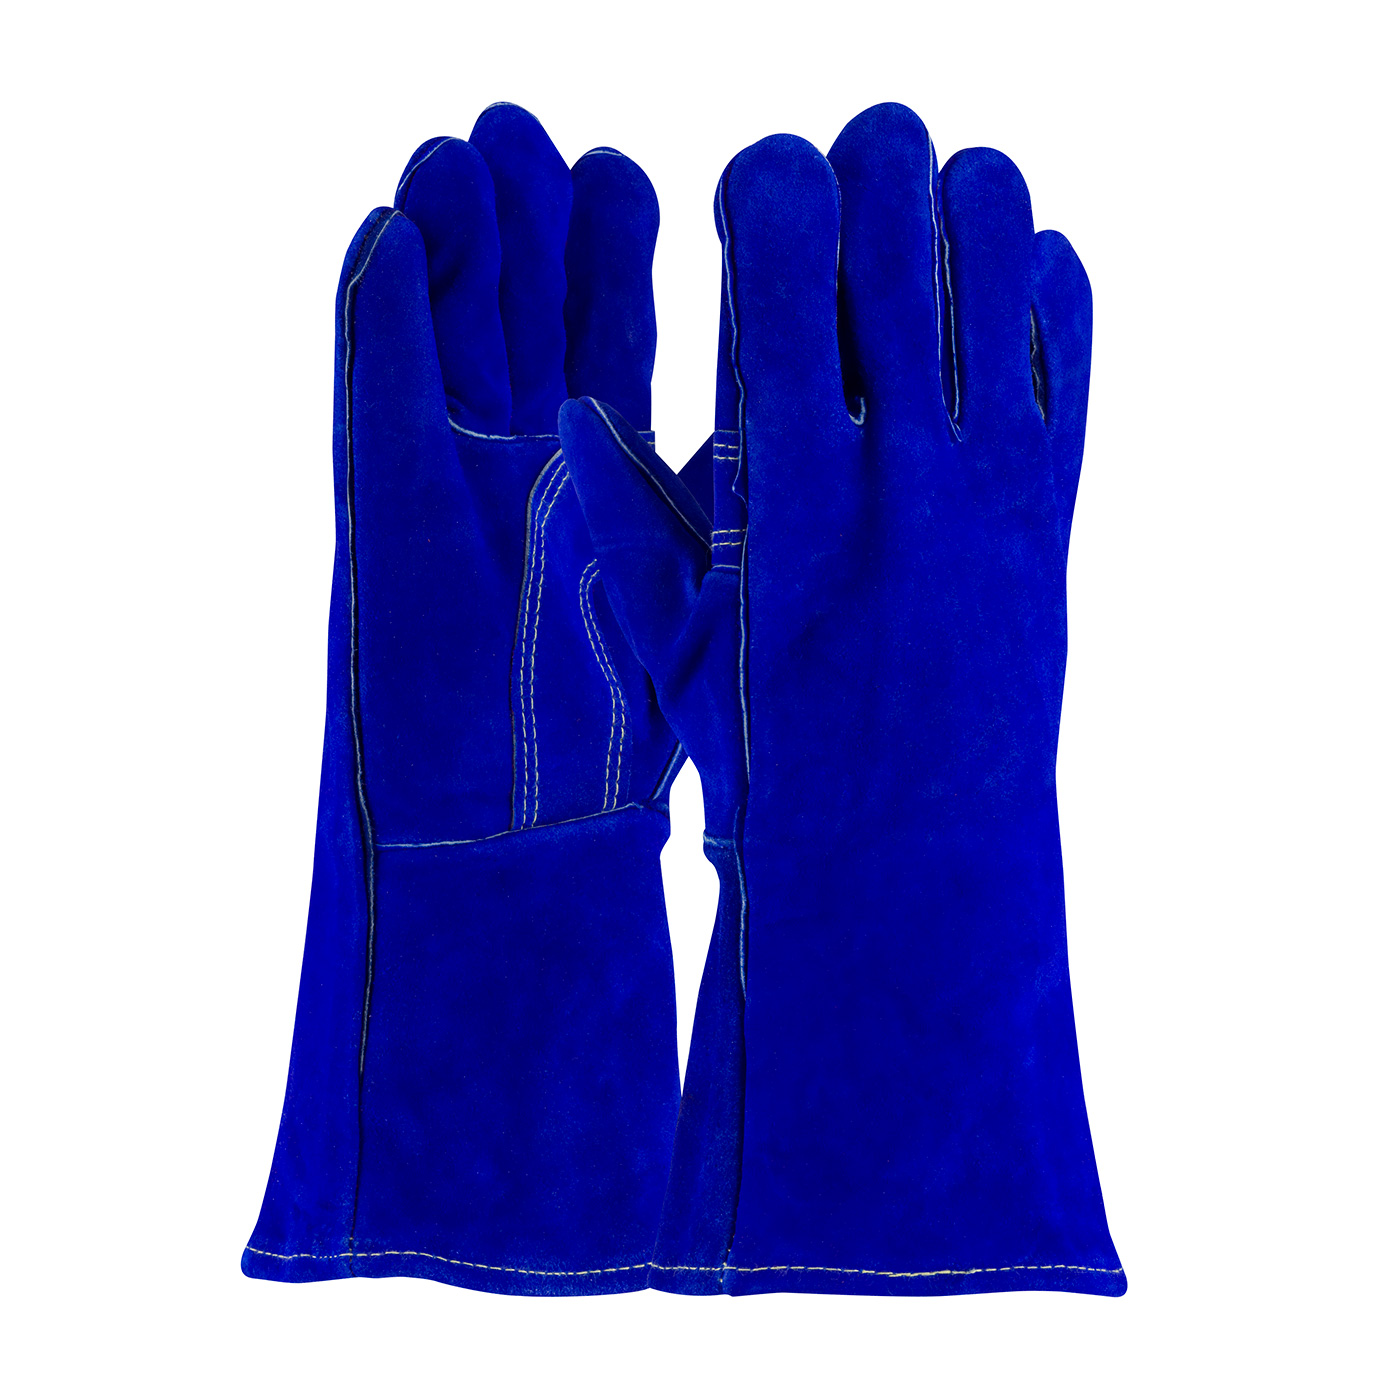 Краги синие. Gloves, Welding Blue Shield / краги спилковые "Blue Welder" kra024. Перчатки сплит. Краги сапфир замшевые длинные.